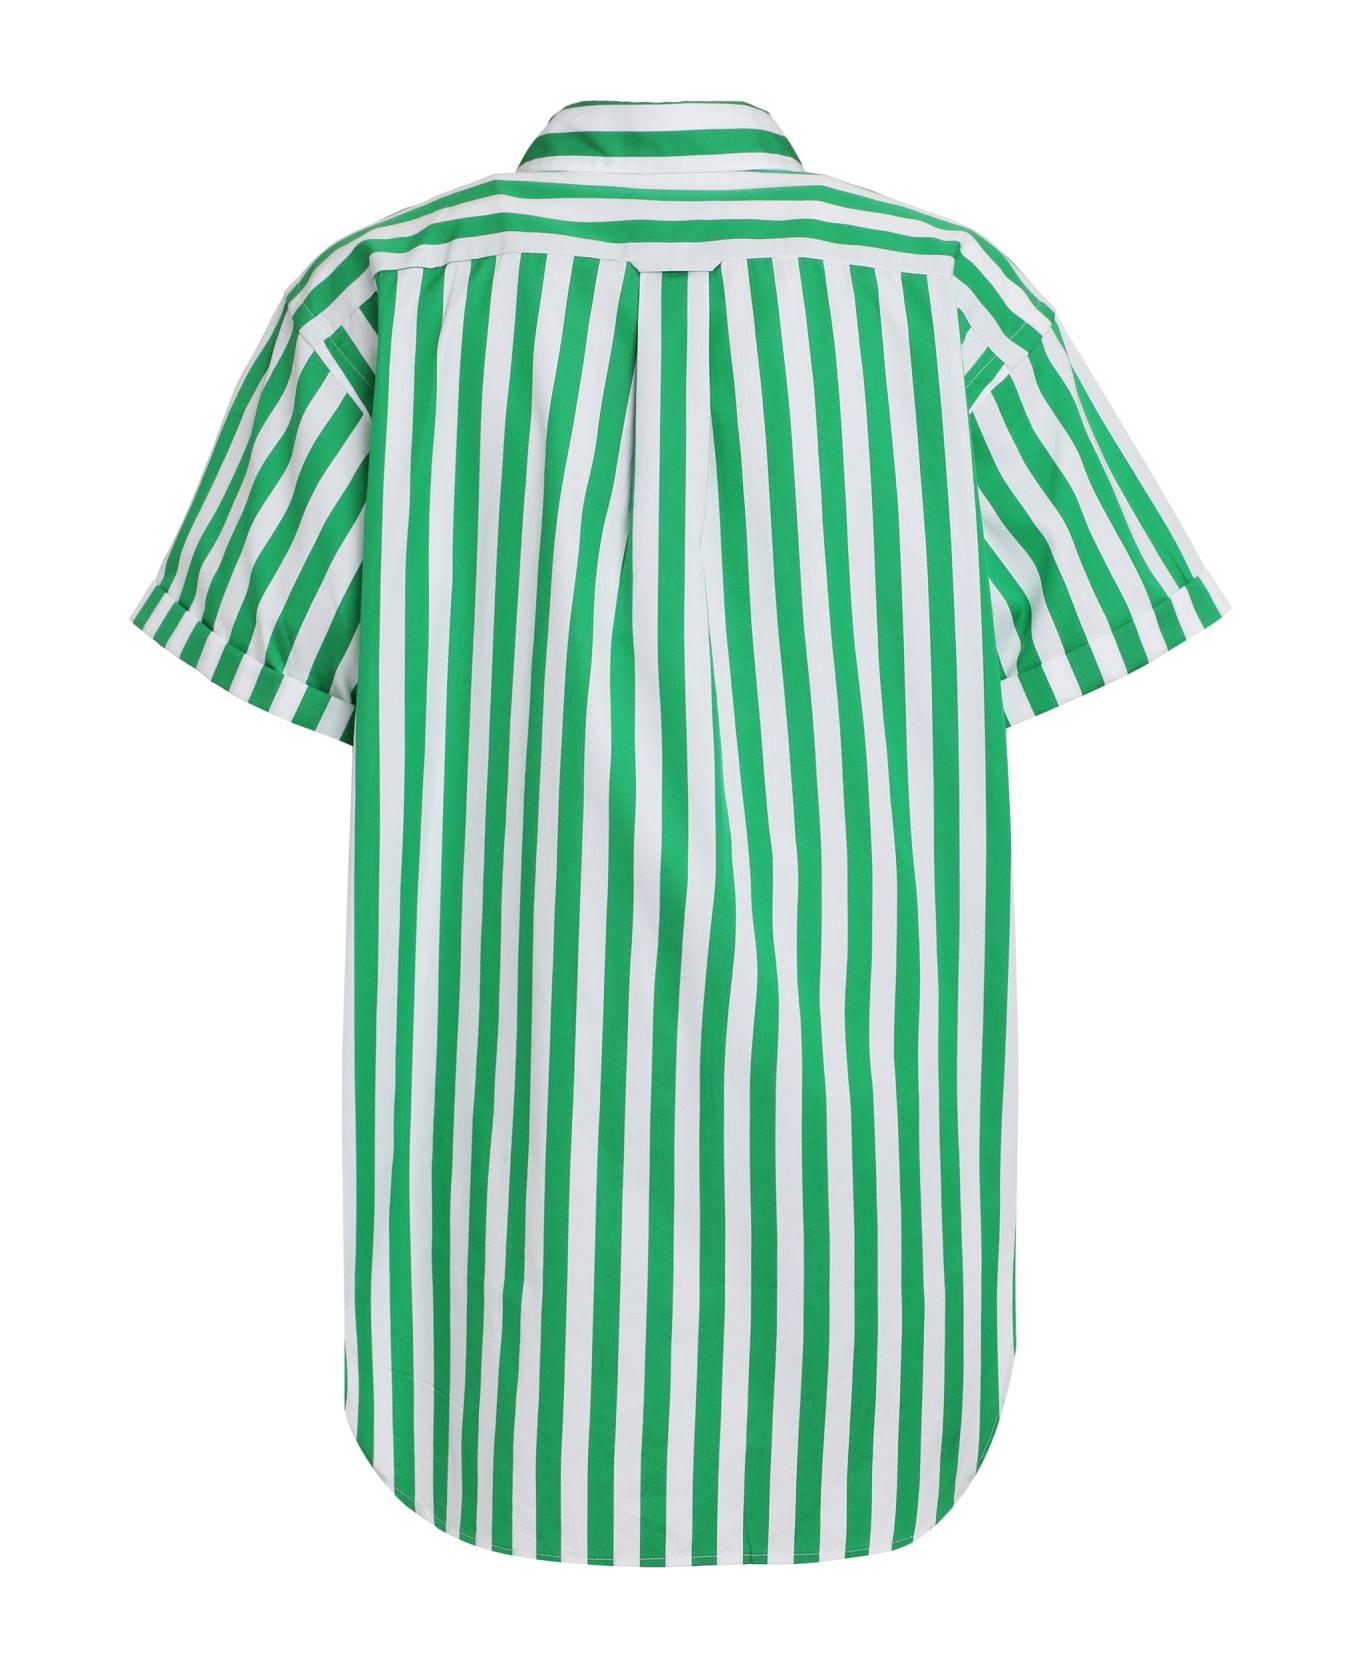 Polo Ralph Lauren Striped Cotton Shirt - green